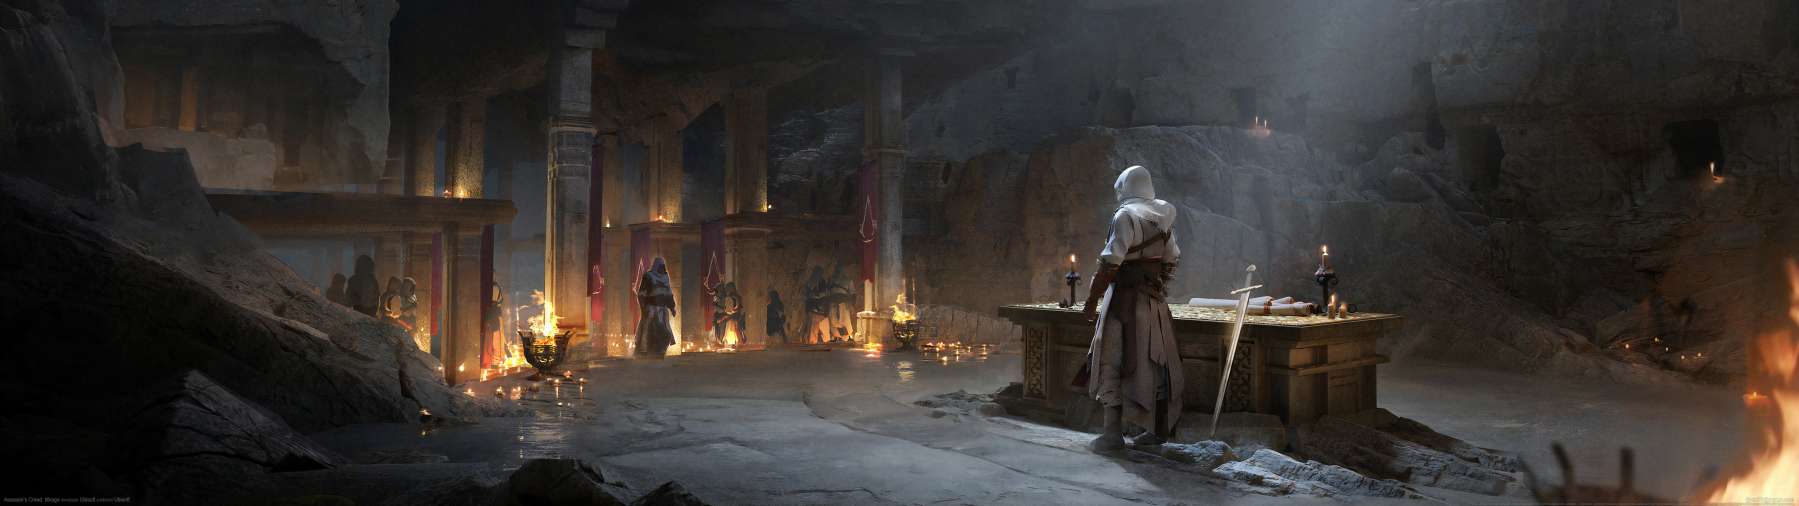 Assassin's Creed: Mirage superwide fondo de escritorio 08